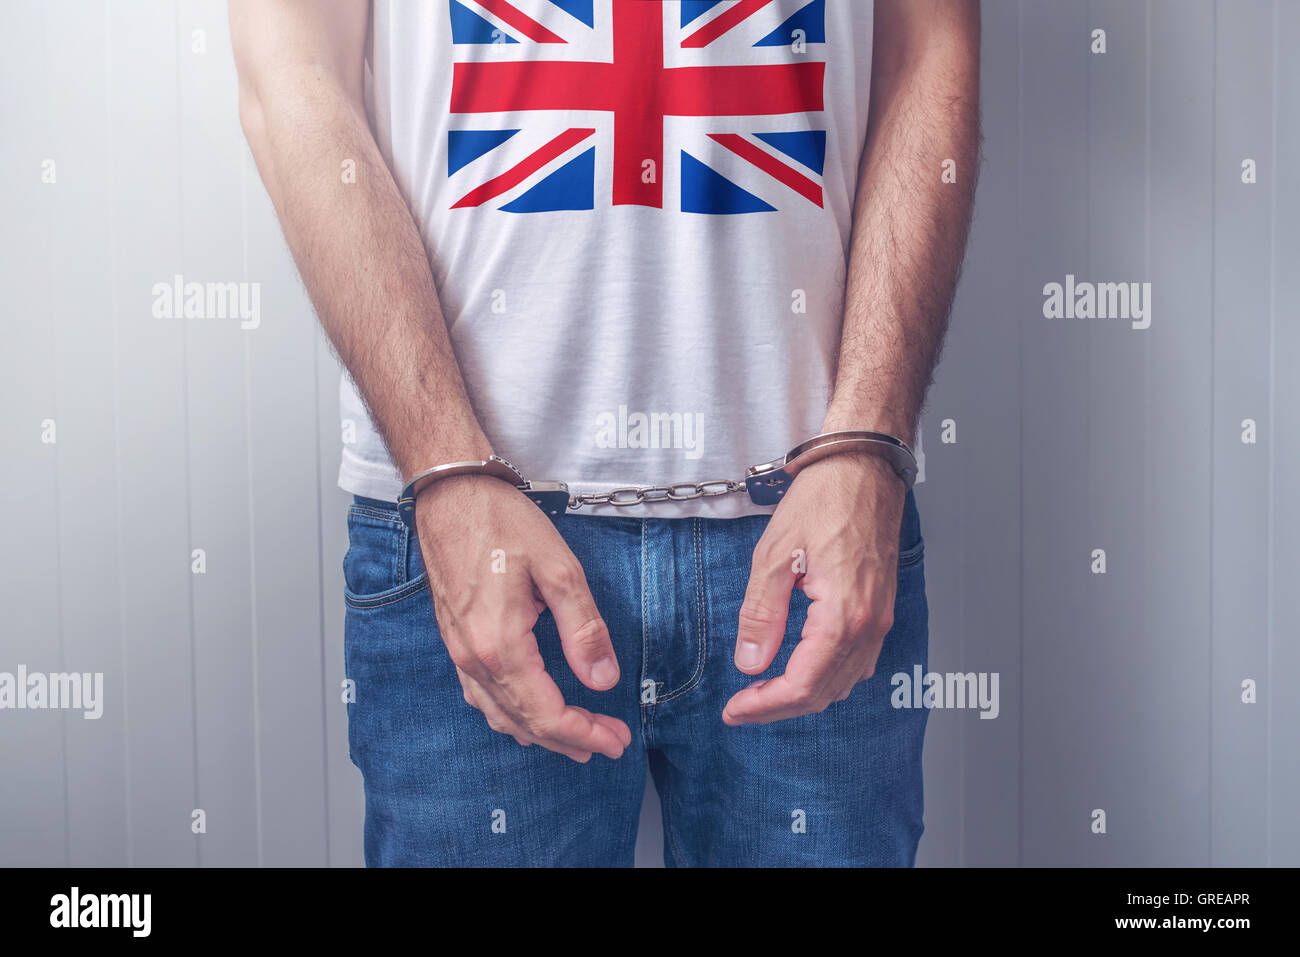 Arrestato uomo con ammanettato mani indossando camicia con Regno Unito bandiera. Irriconoscibile la persona di sesso maschile in jeans con manette detenuto mi Foto Stock